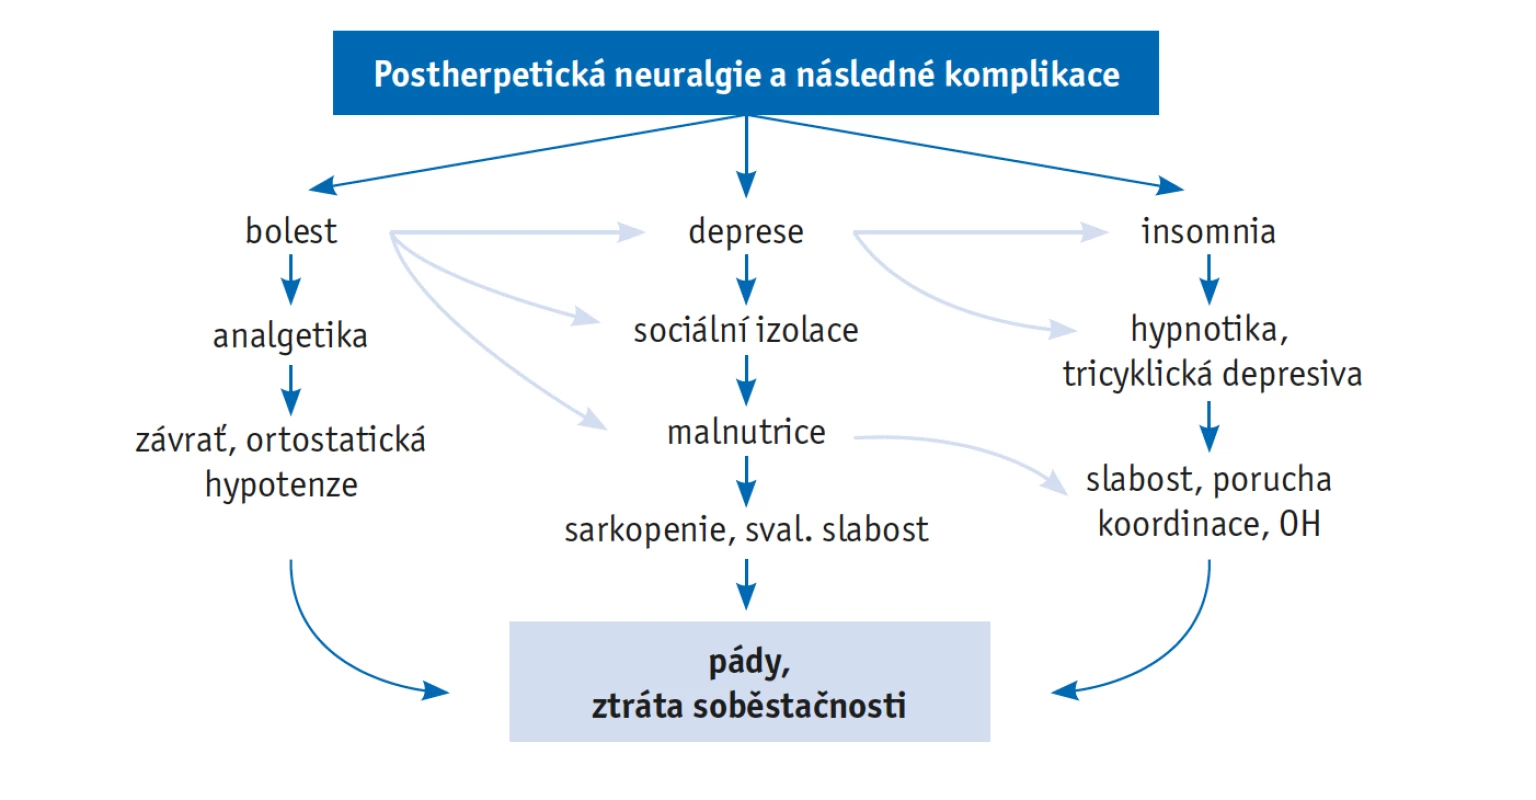 Možné komplikace postherpetické neuralgie u starších osob(44)